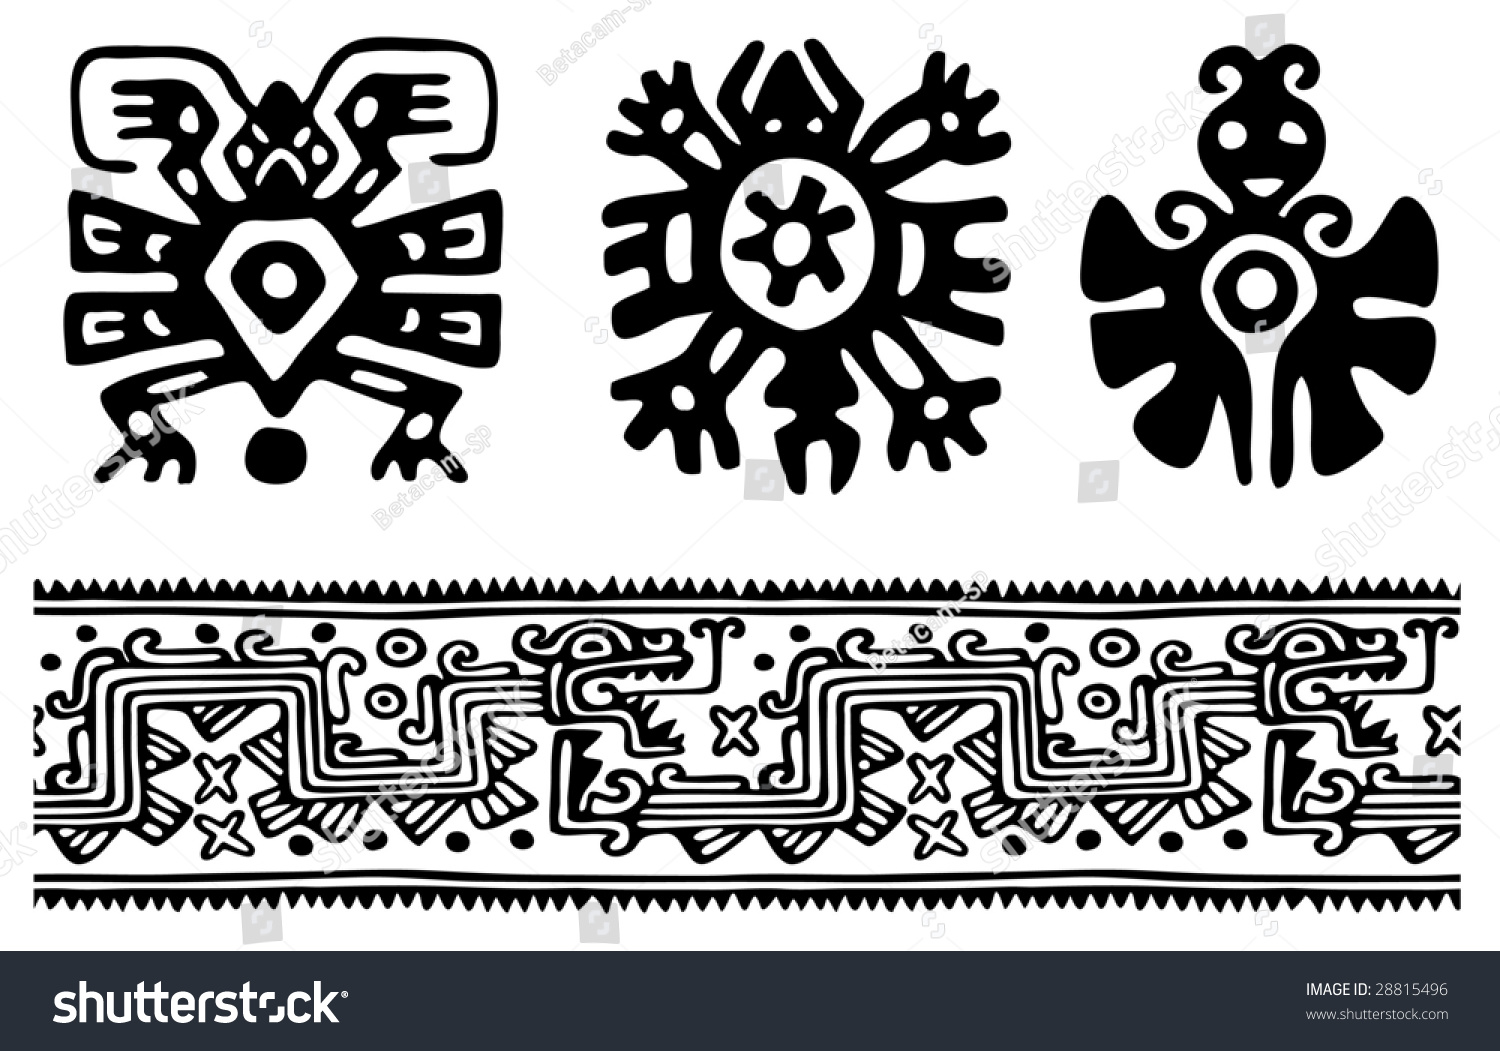 Ацтекский орнамент растительный